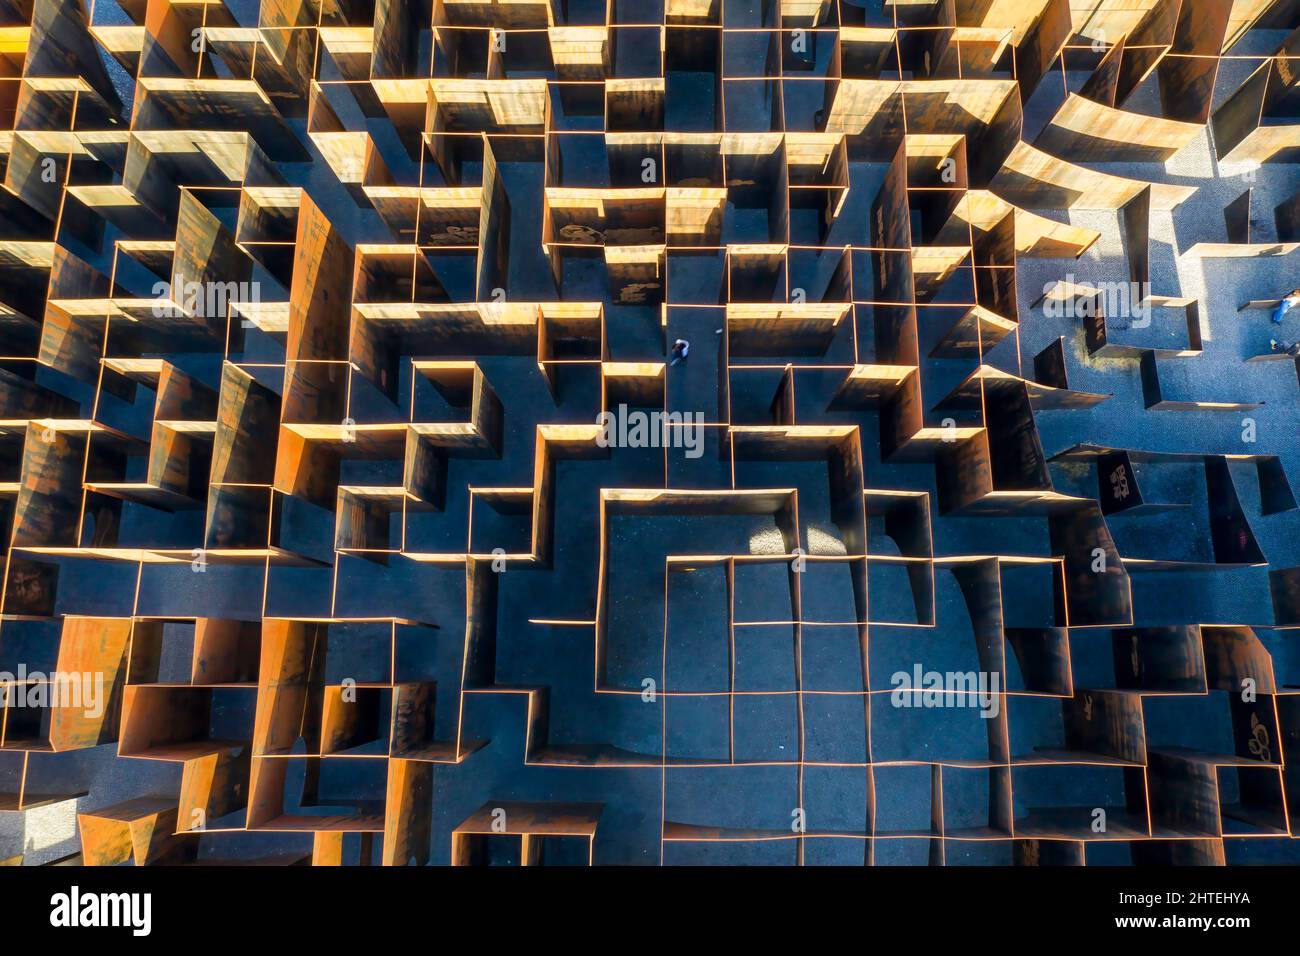 C-Mine maze, Belgium Stock Photo